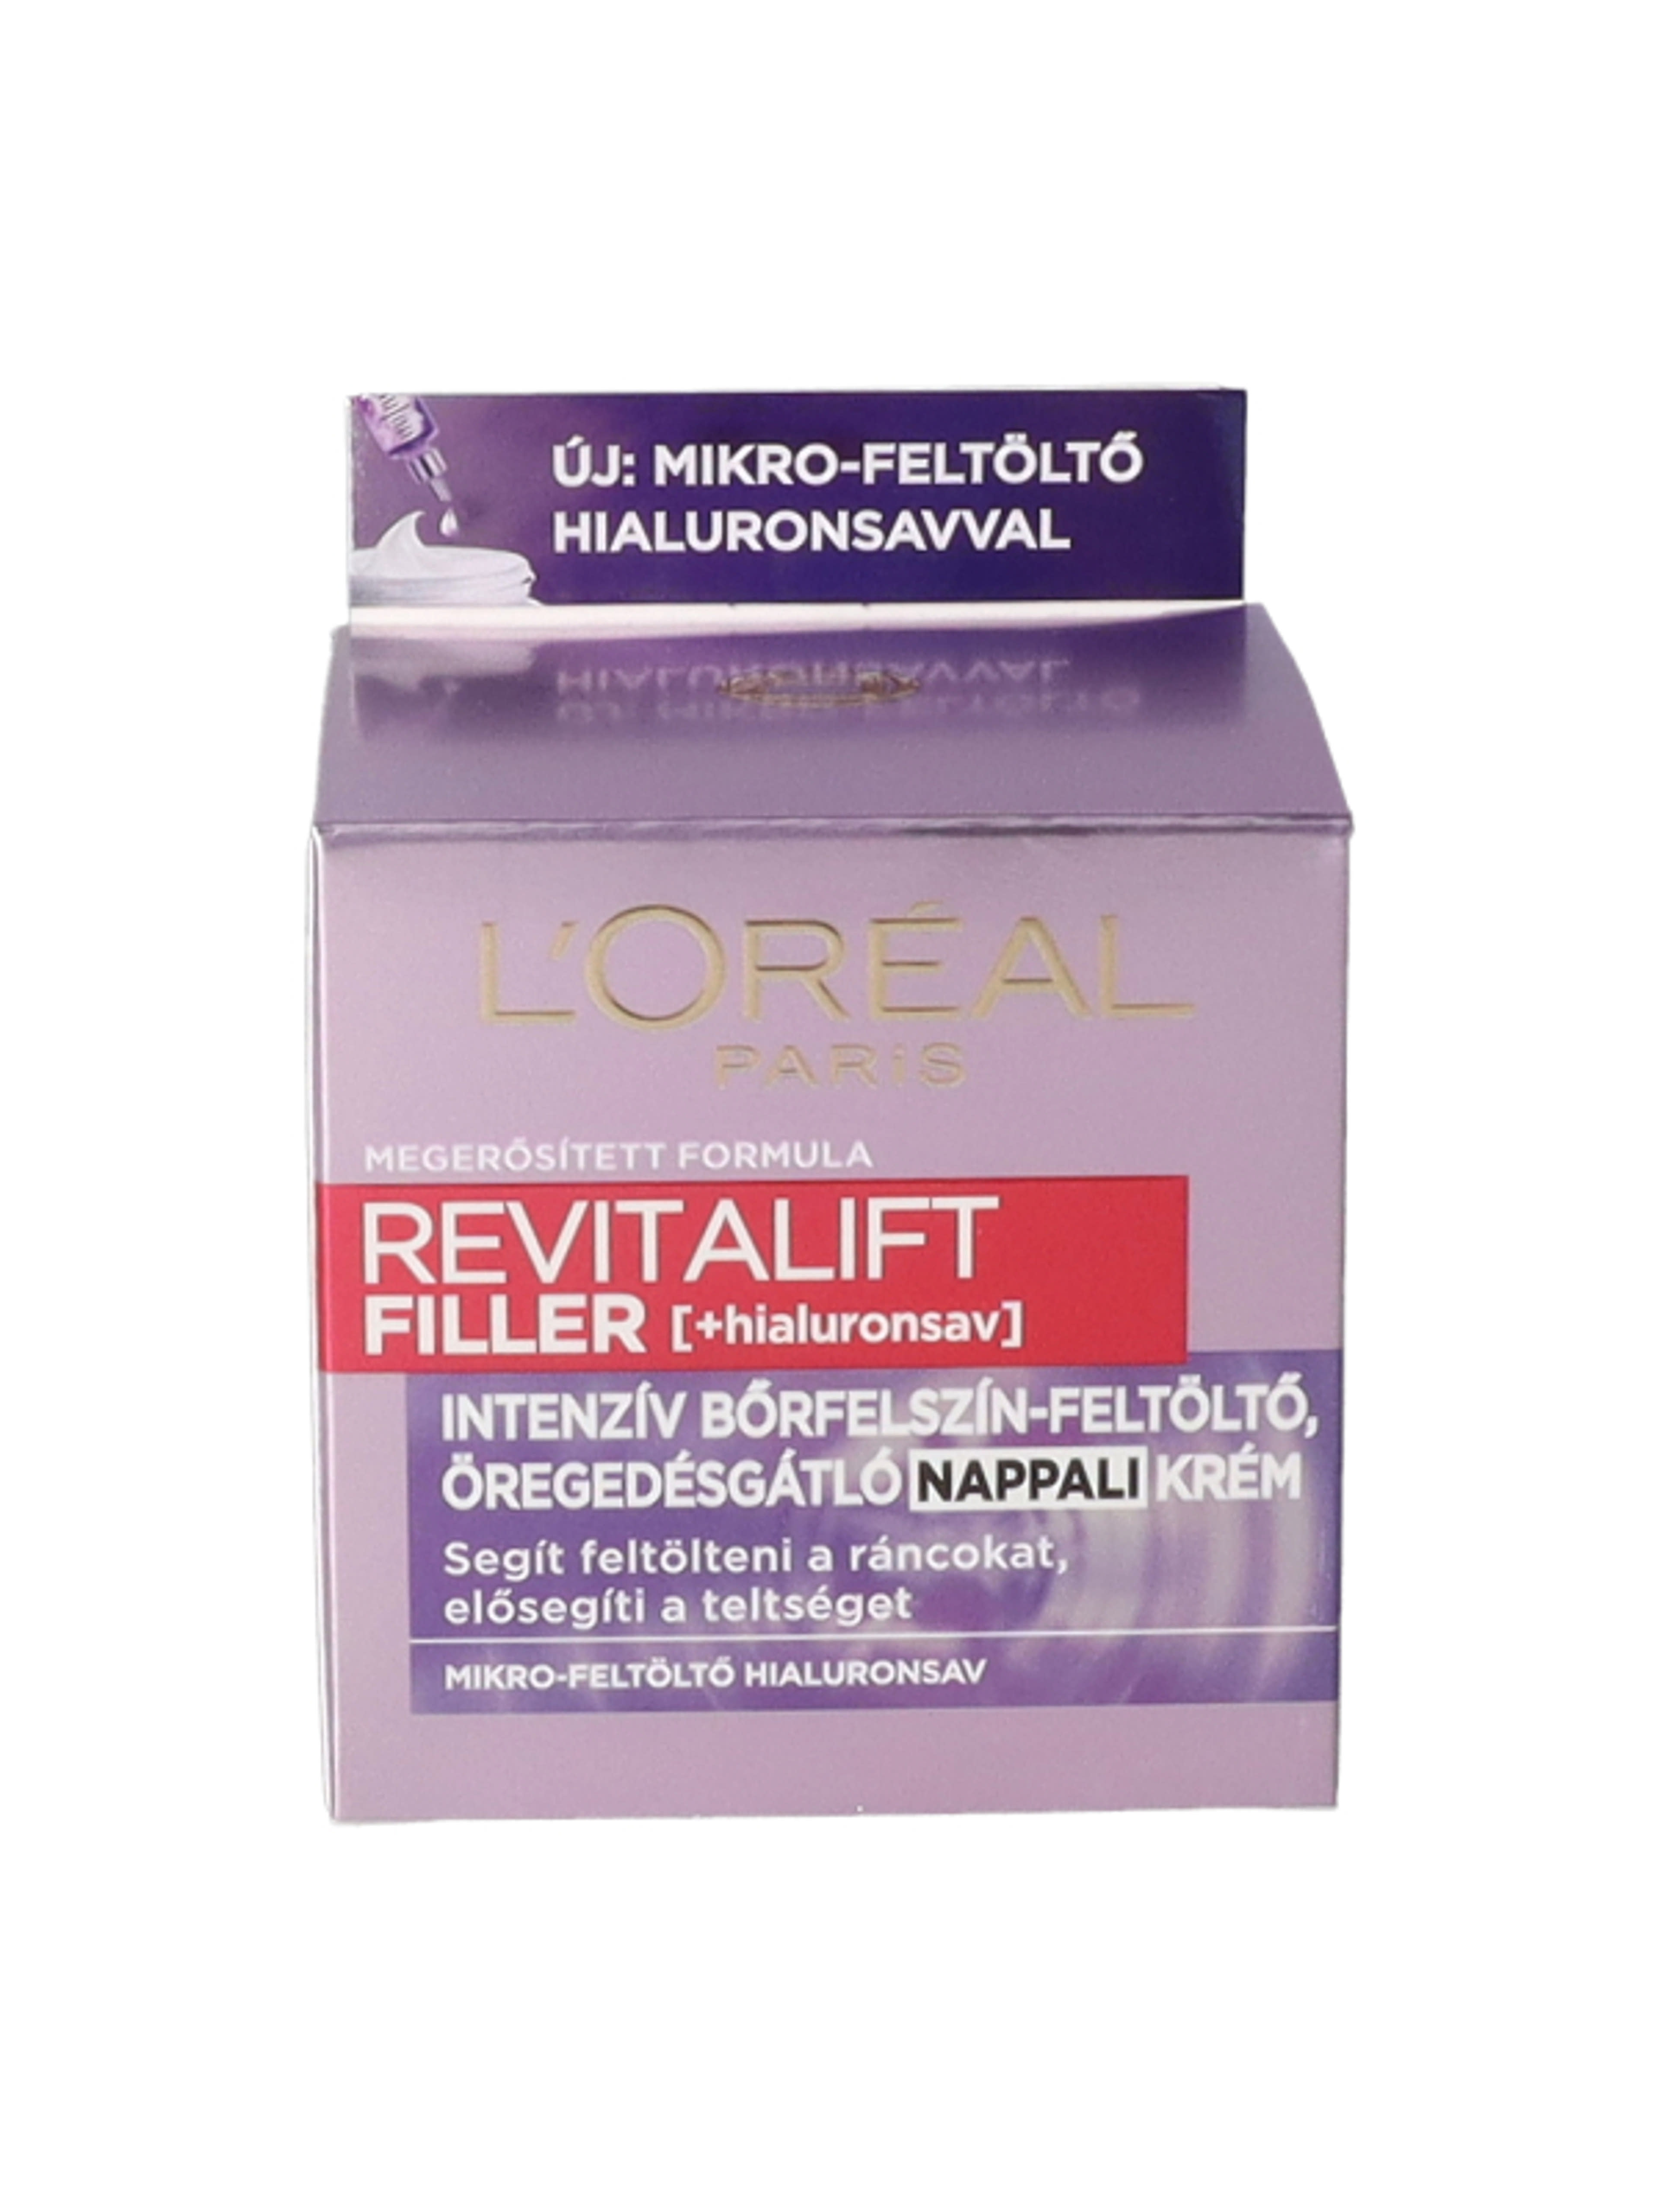 L'Oréal Paris Revitalift Filler ránctalanító,feltöltő nappali krém hialuronsavval 50ml - 1 db